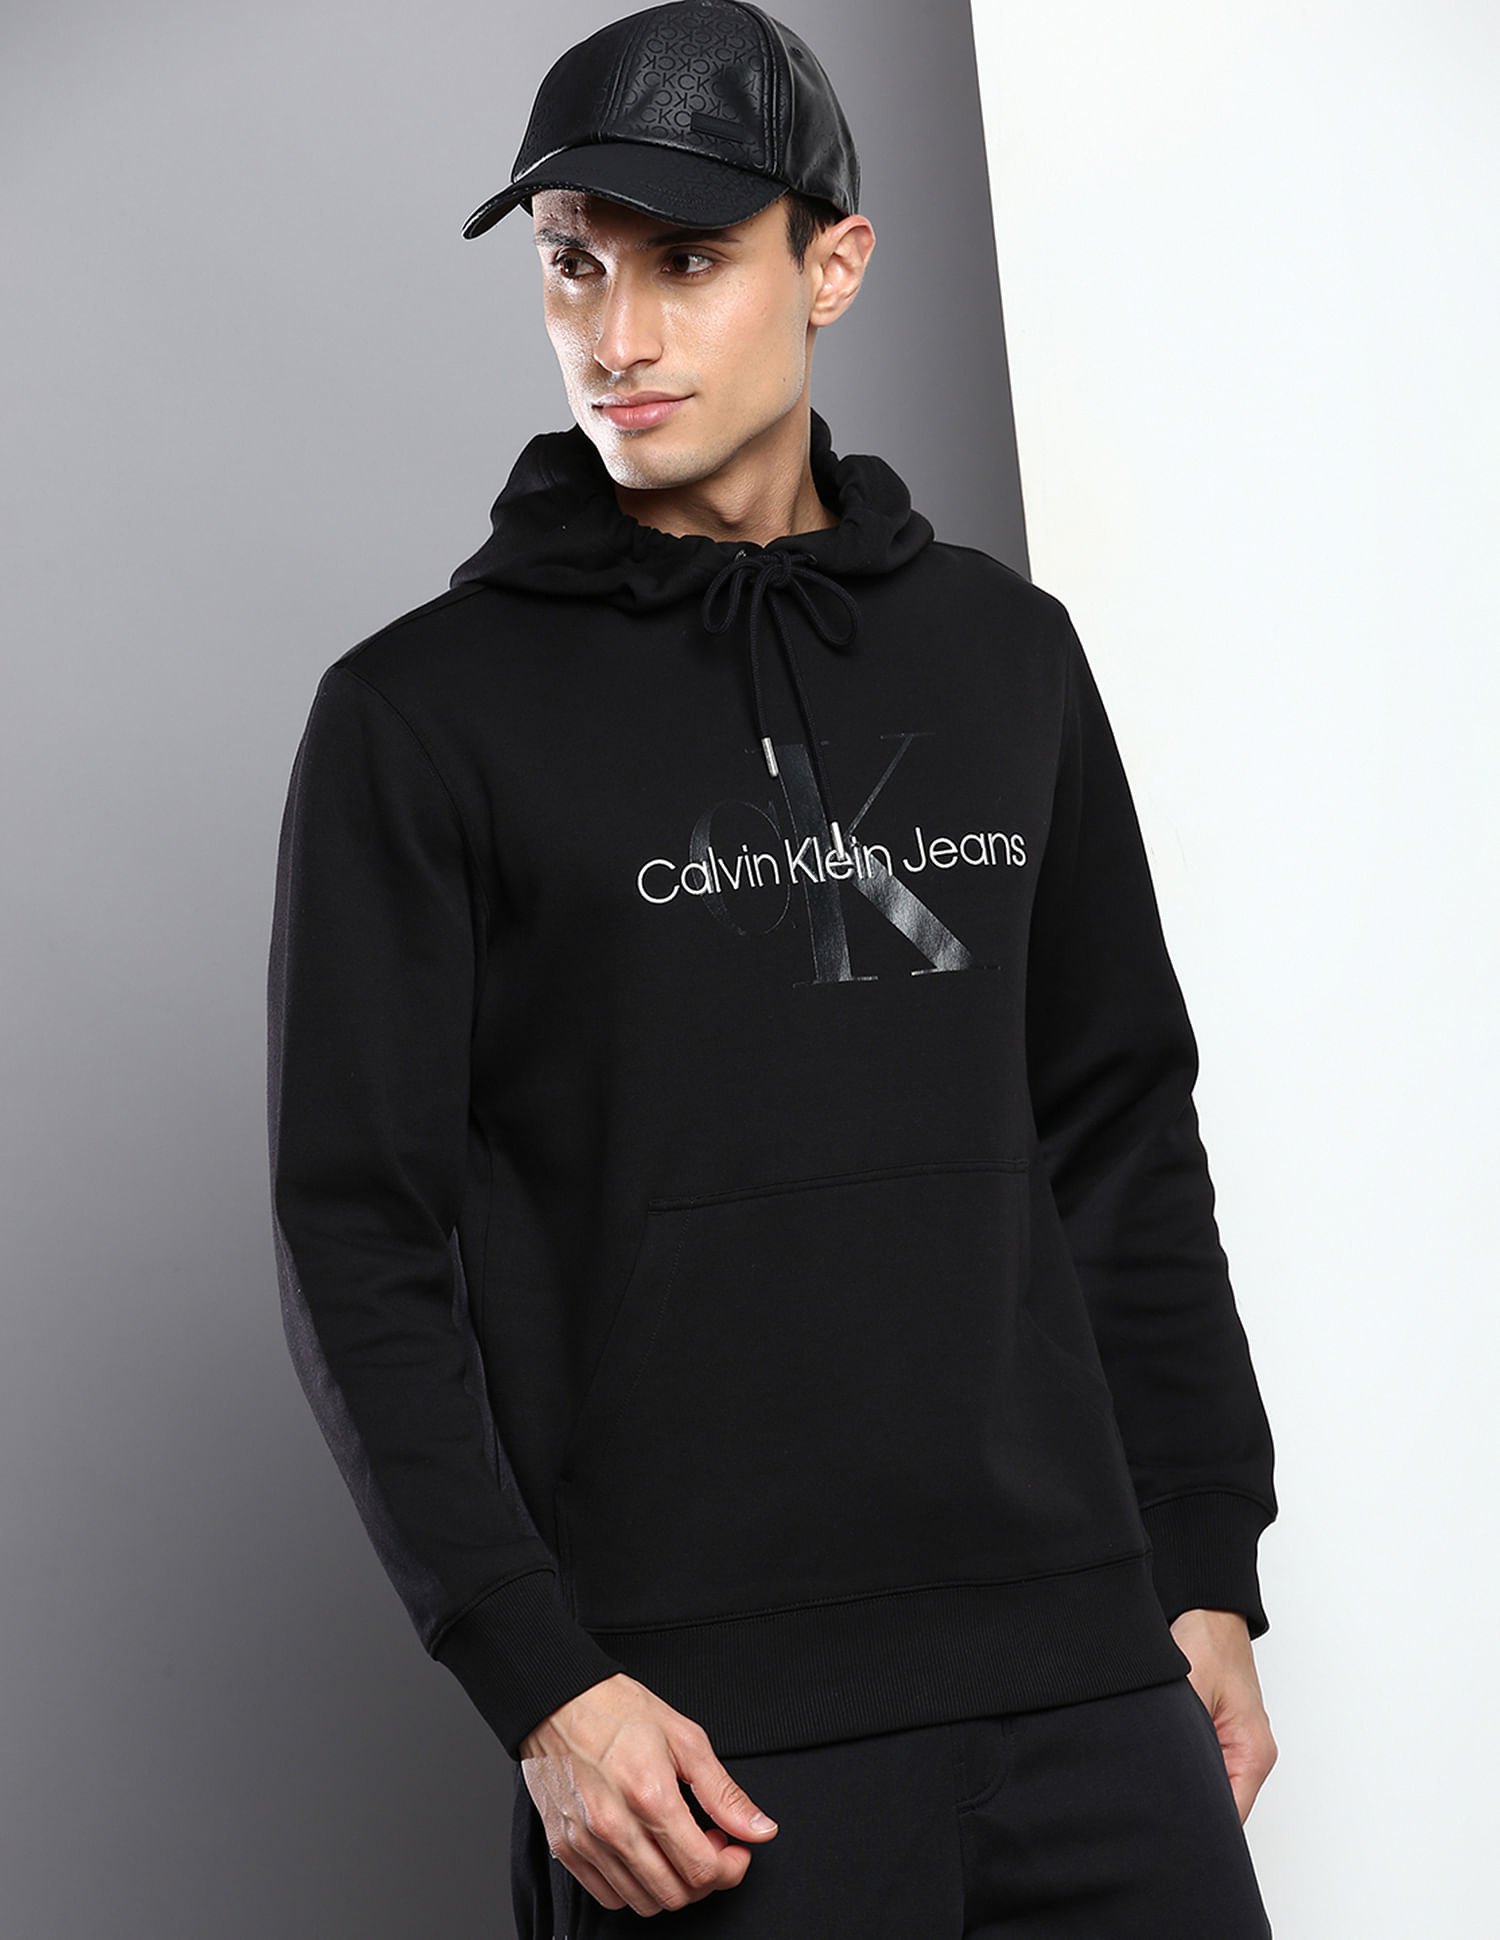 Buy Calvin Klein Men Black Long Sleeve Velour Monogram T-Shirt - NNNOW.com